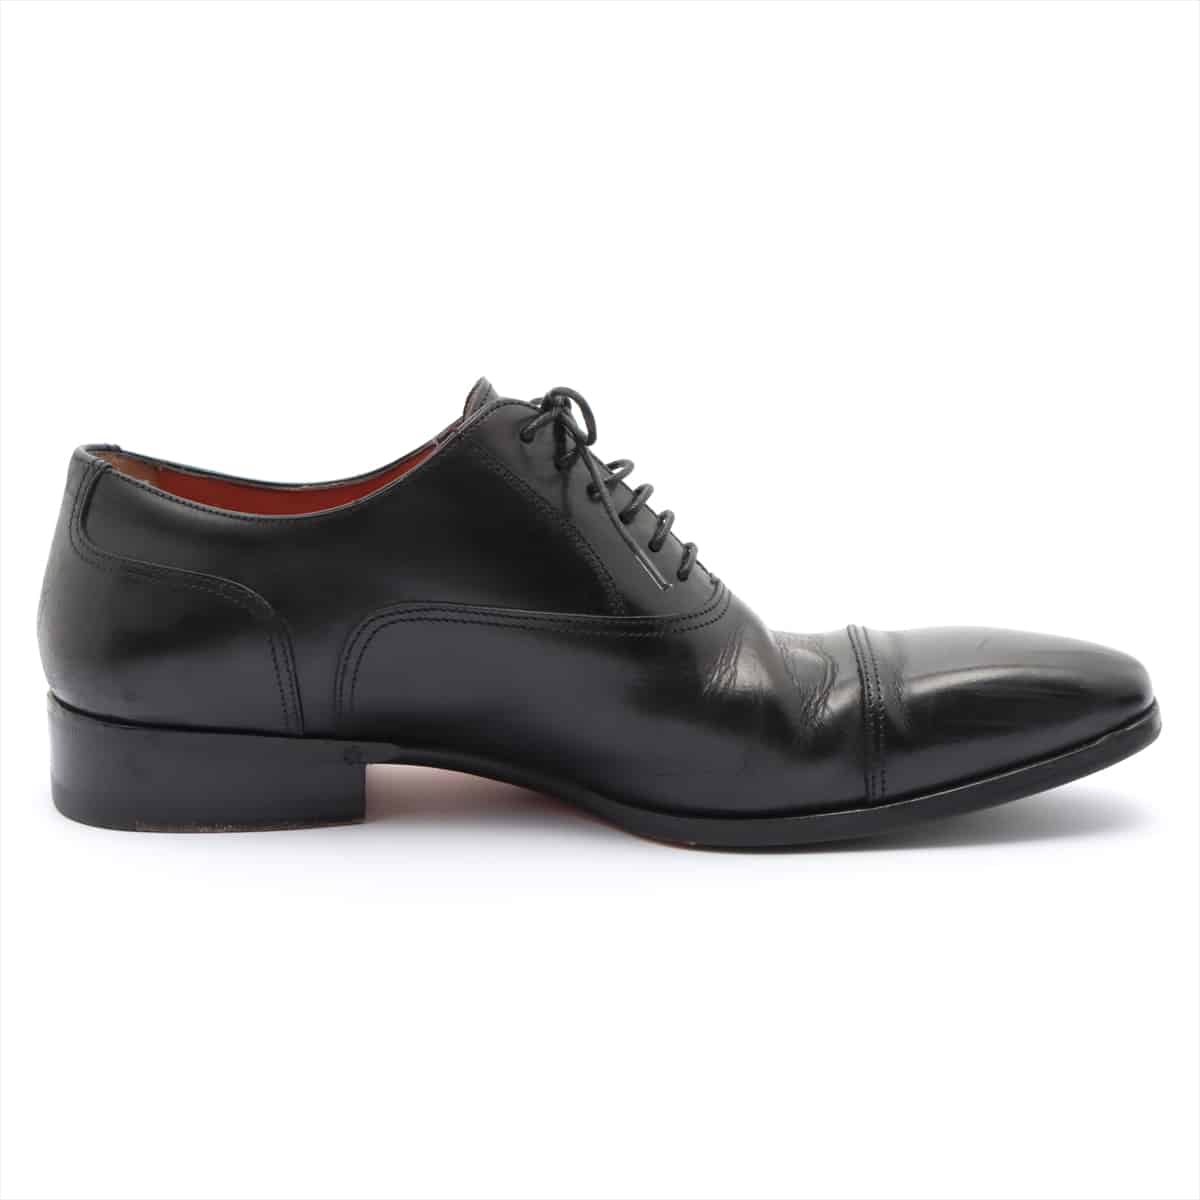 Santoni Leather Leather shoes 5 1/2 Men's Black